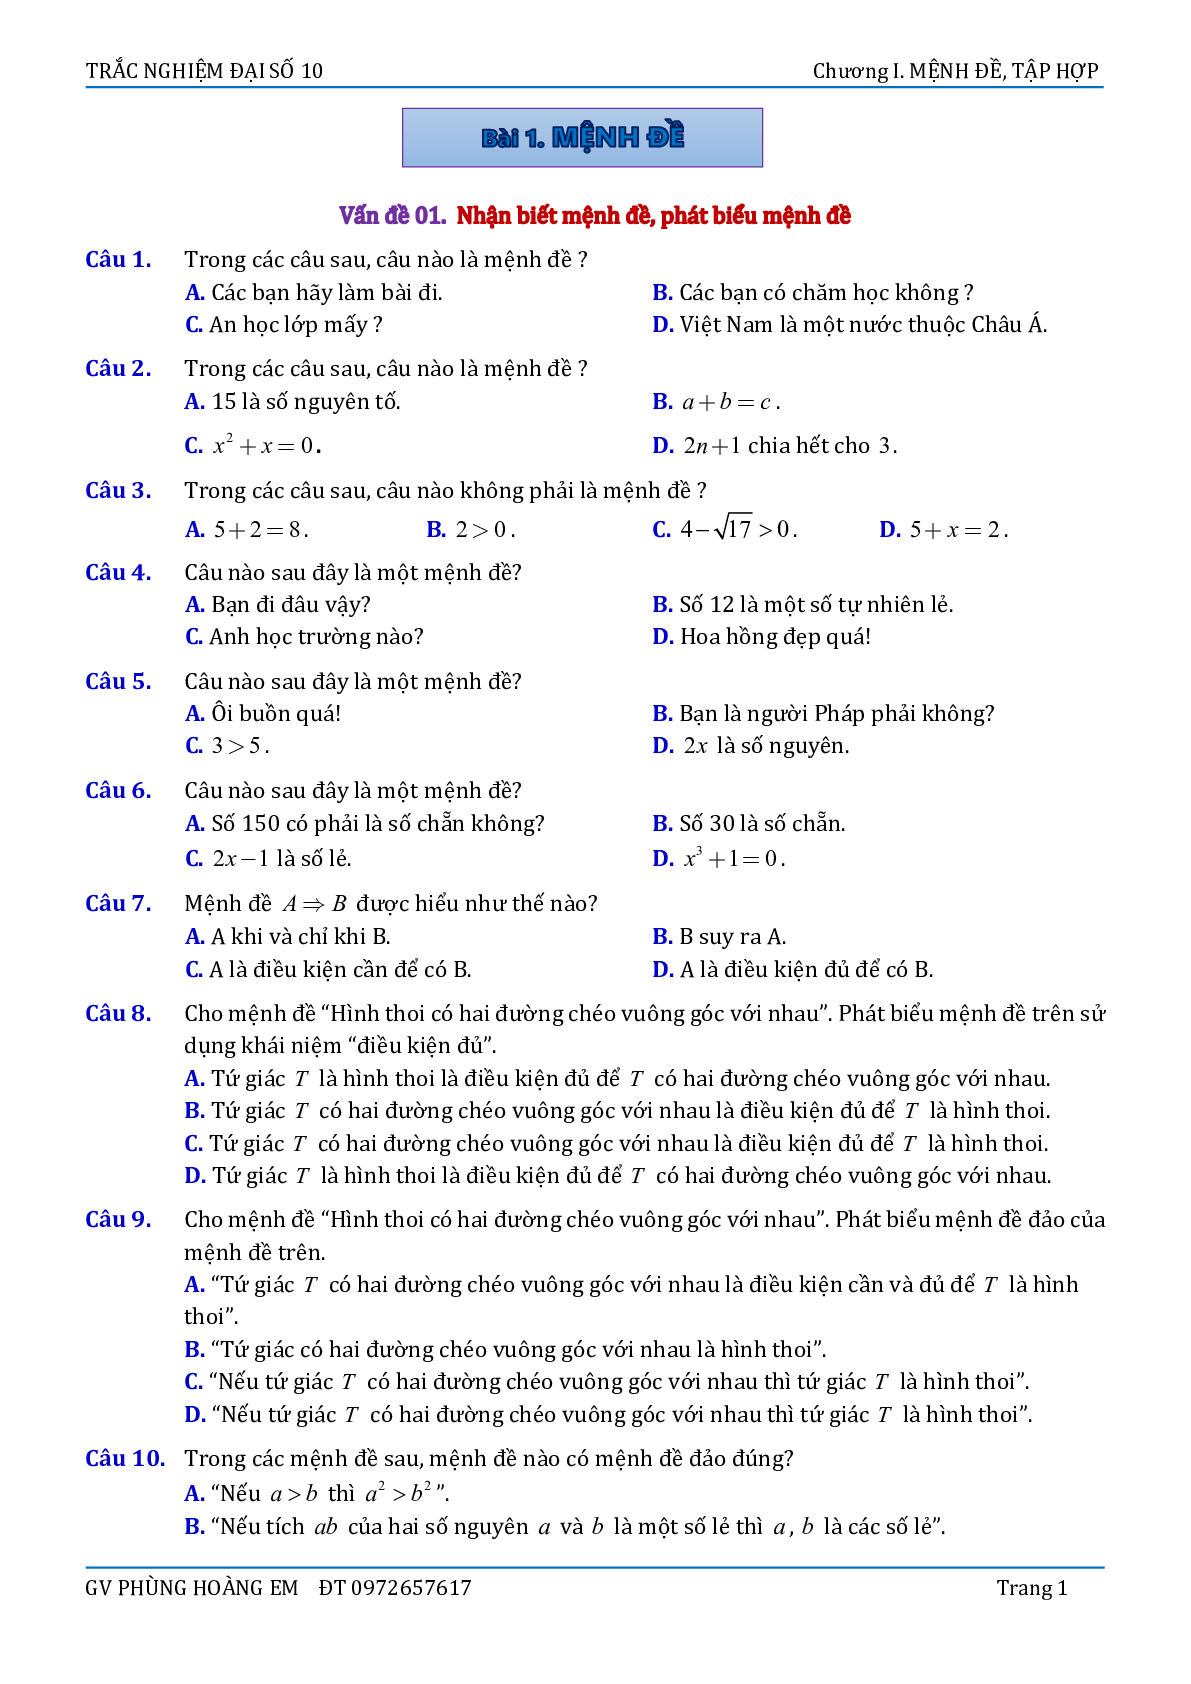 Bài tập Trắc nghiệm Mệnh đề và Tập hợp - Đại số 10 (trang 2)